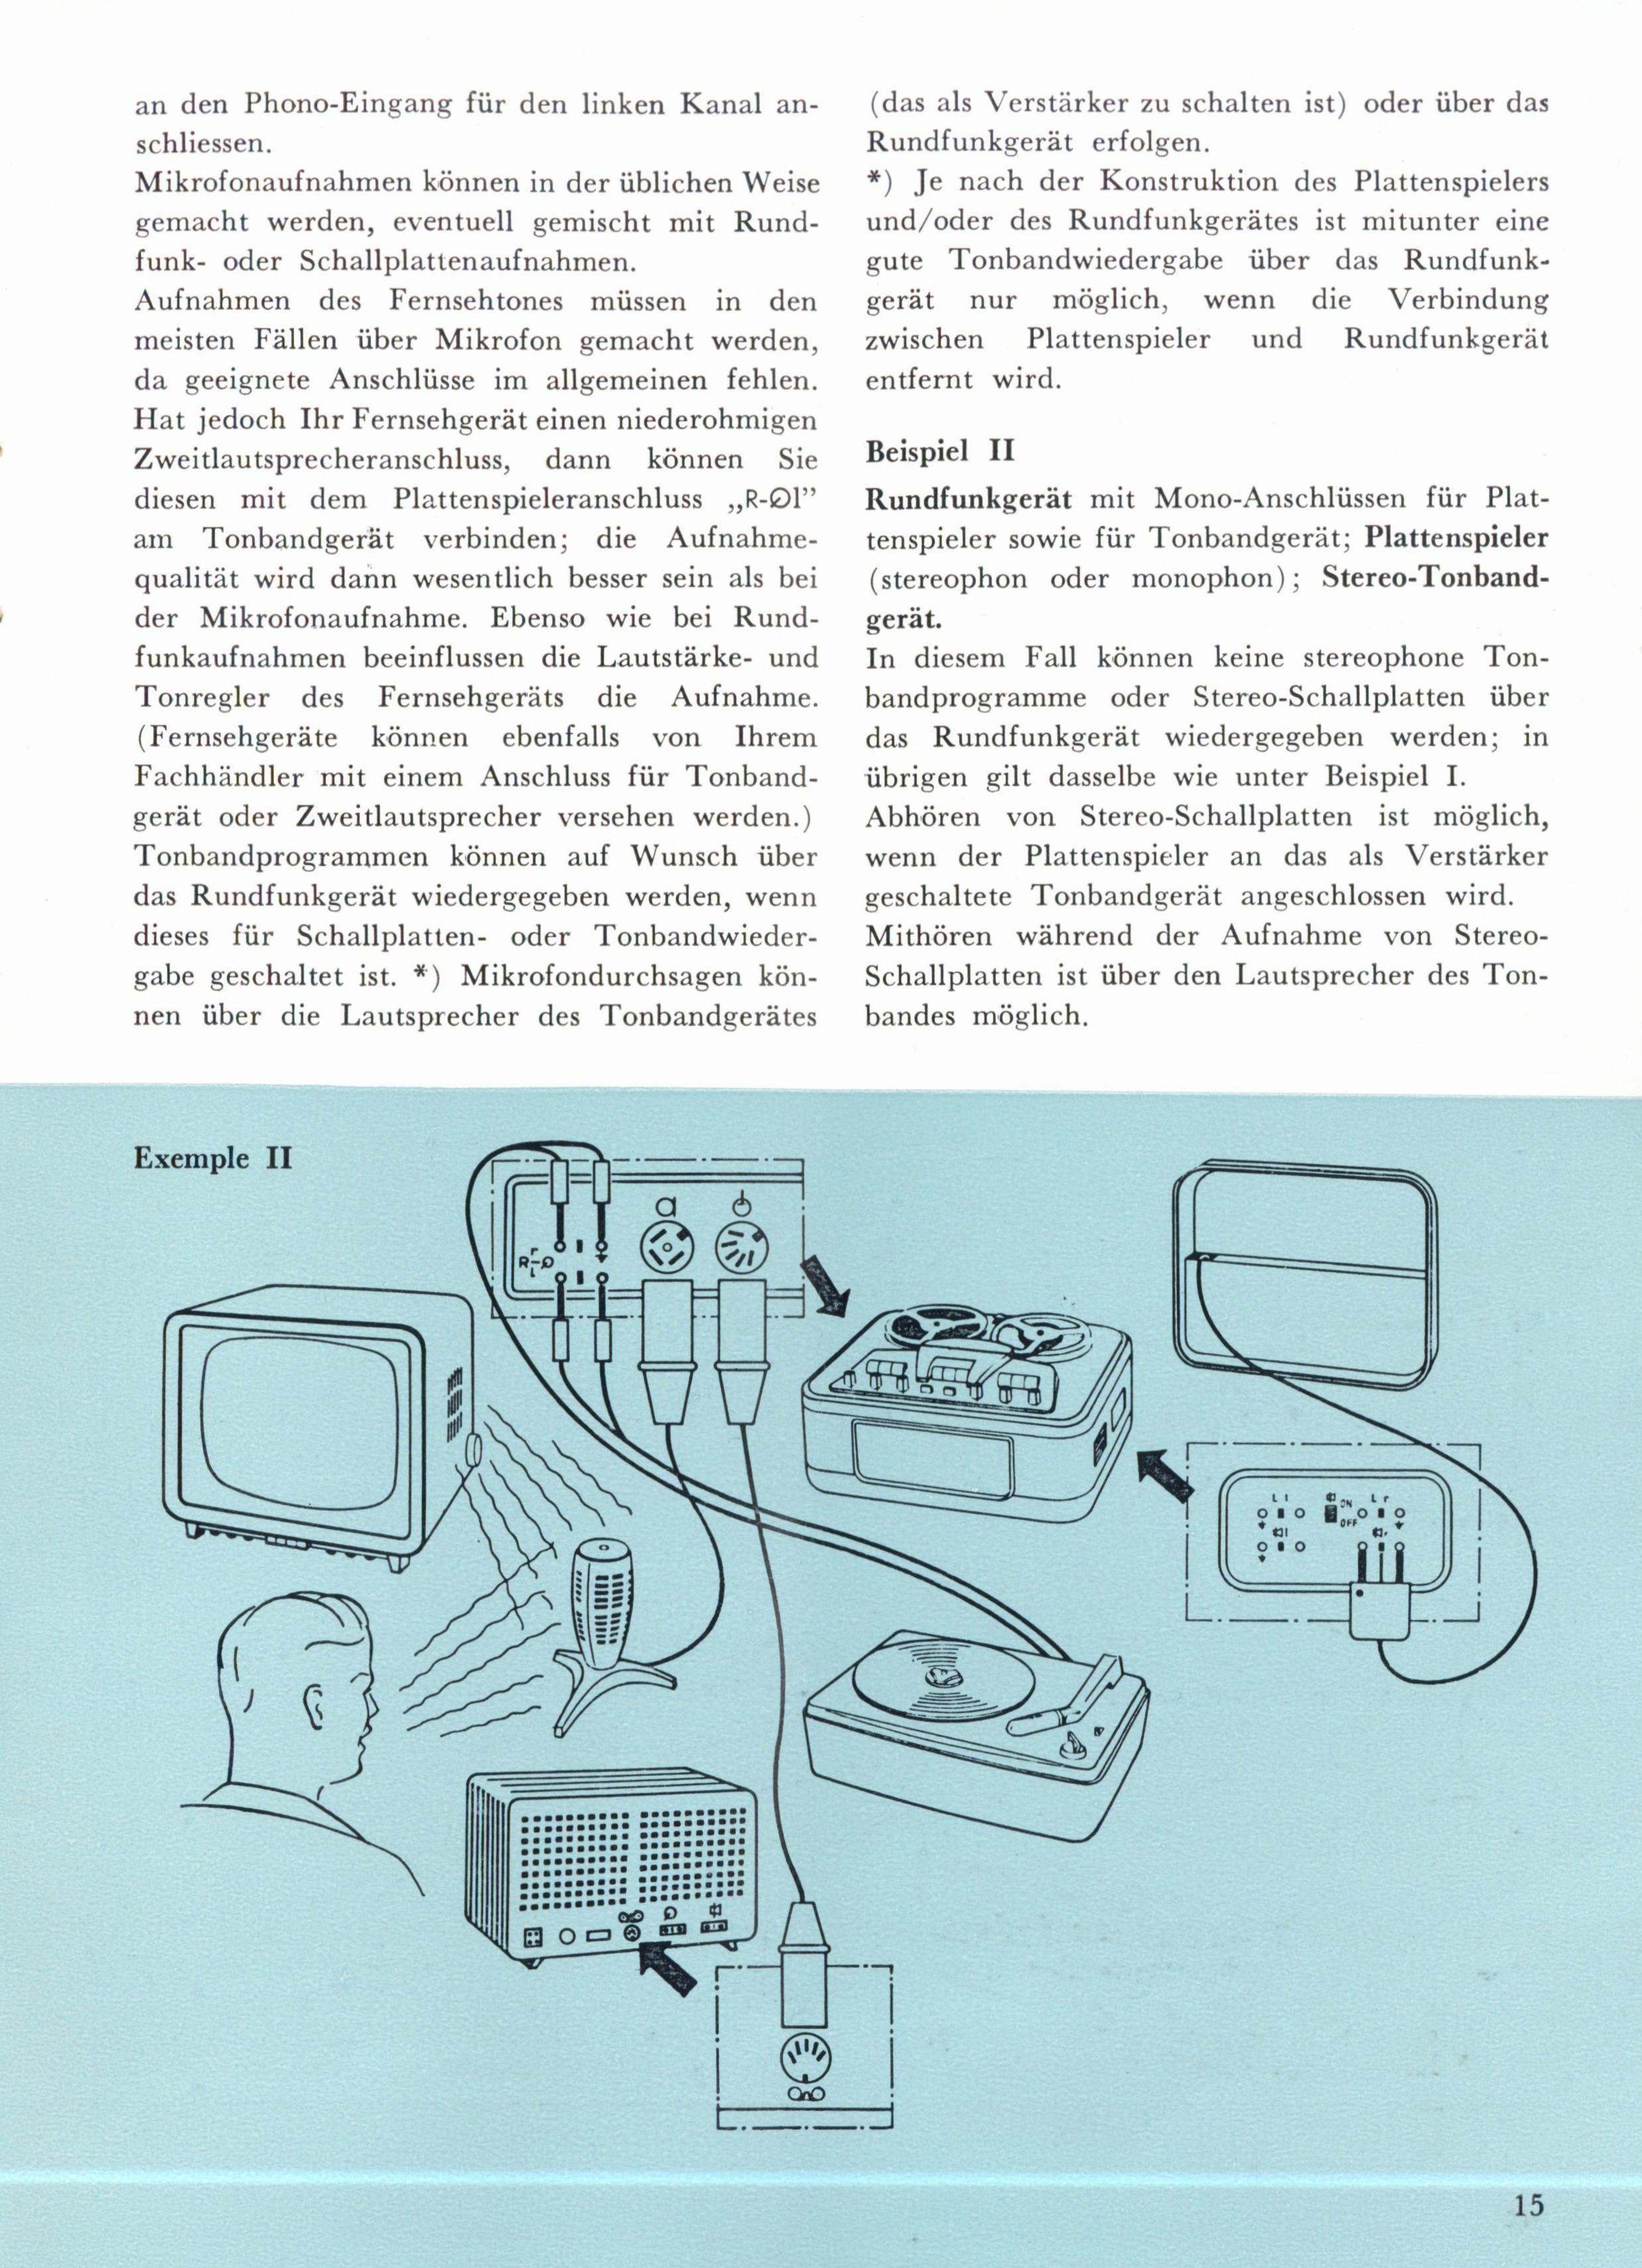 Philips Service Manual für EL 3536 deutsch Copy 